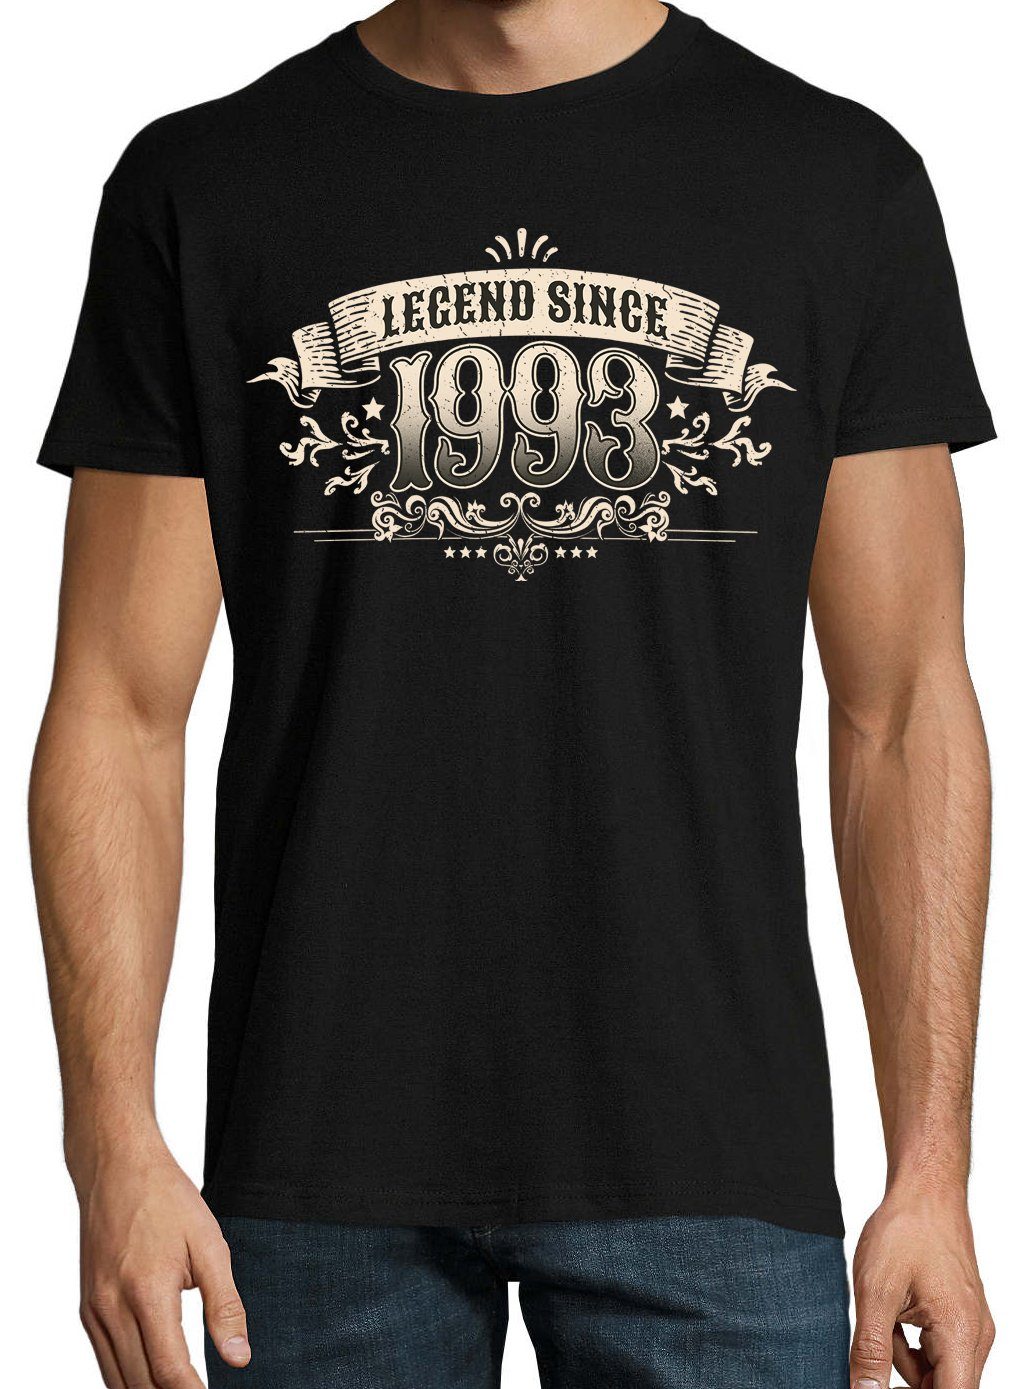 Frontprint mit Designz Since Shirt Schwarz T-Shirt 1993" Herren trendigem Youth "Legend